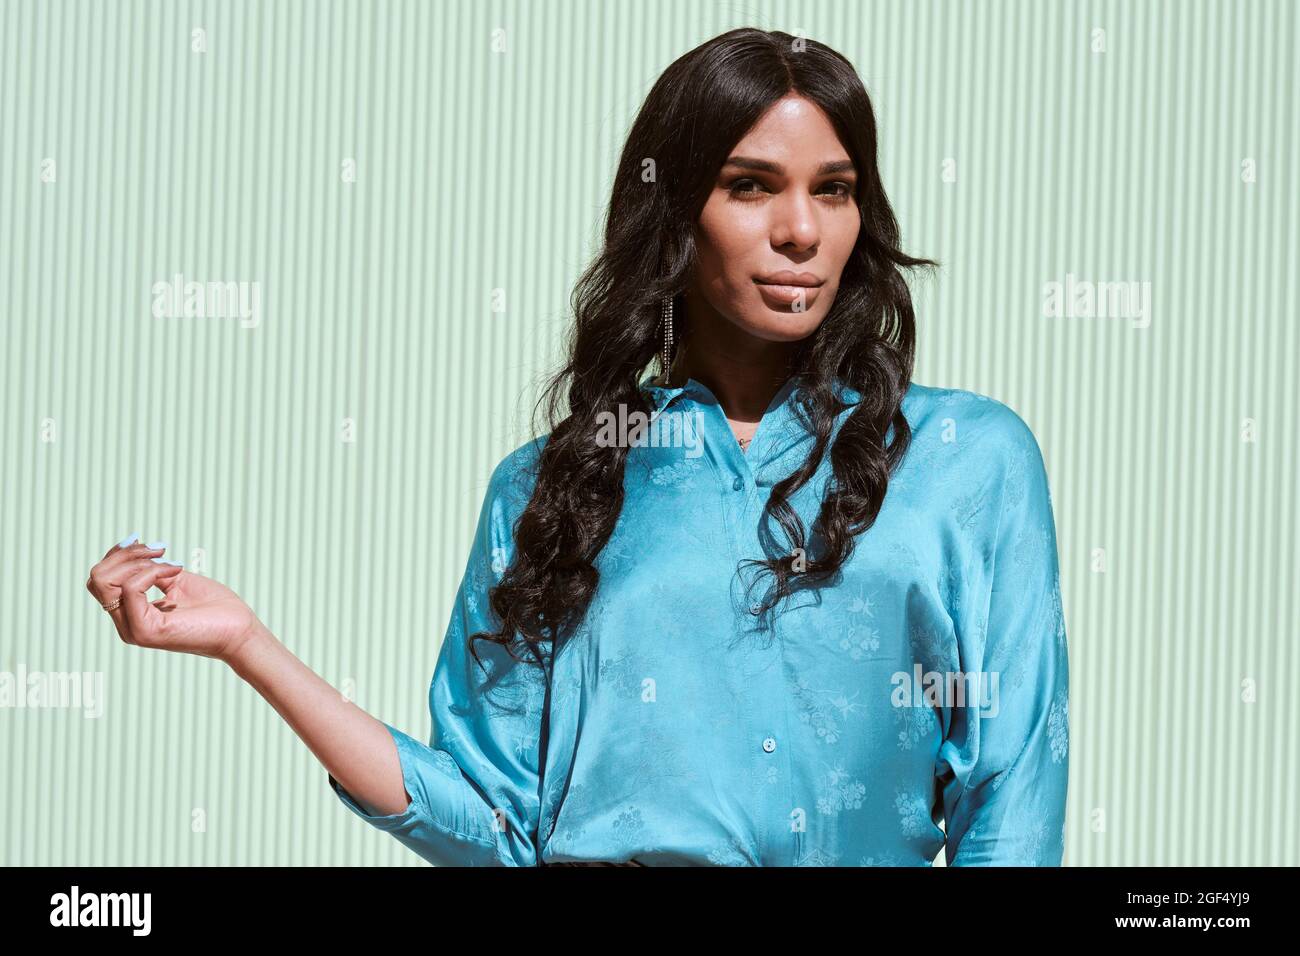 Modische weibliche Transgender, die vor einer hellblauen Wand steht Stockfoto